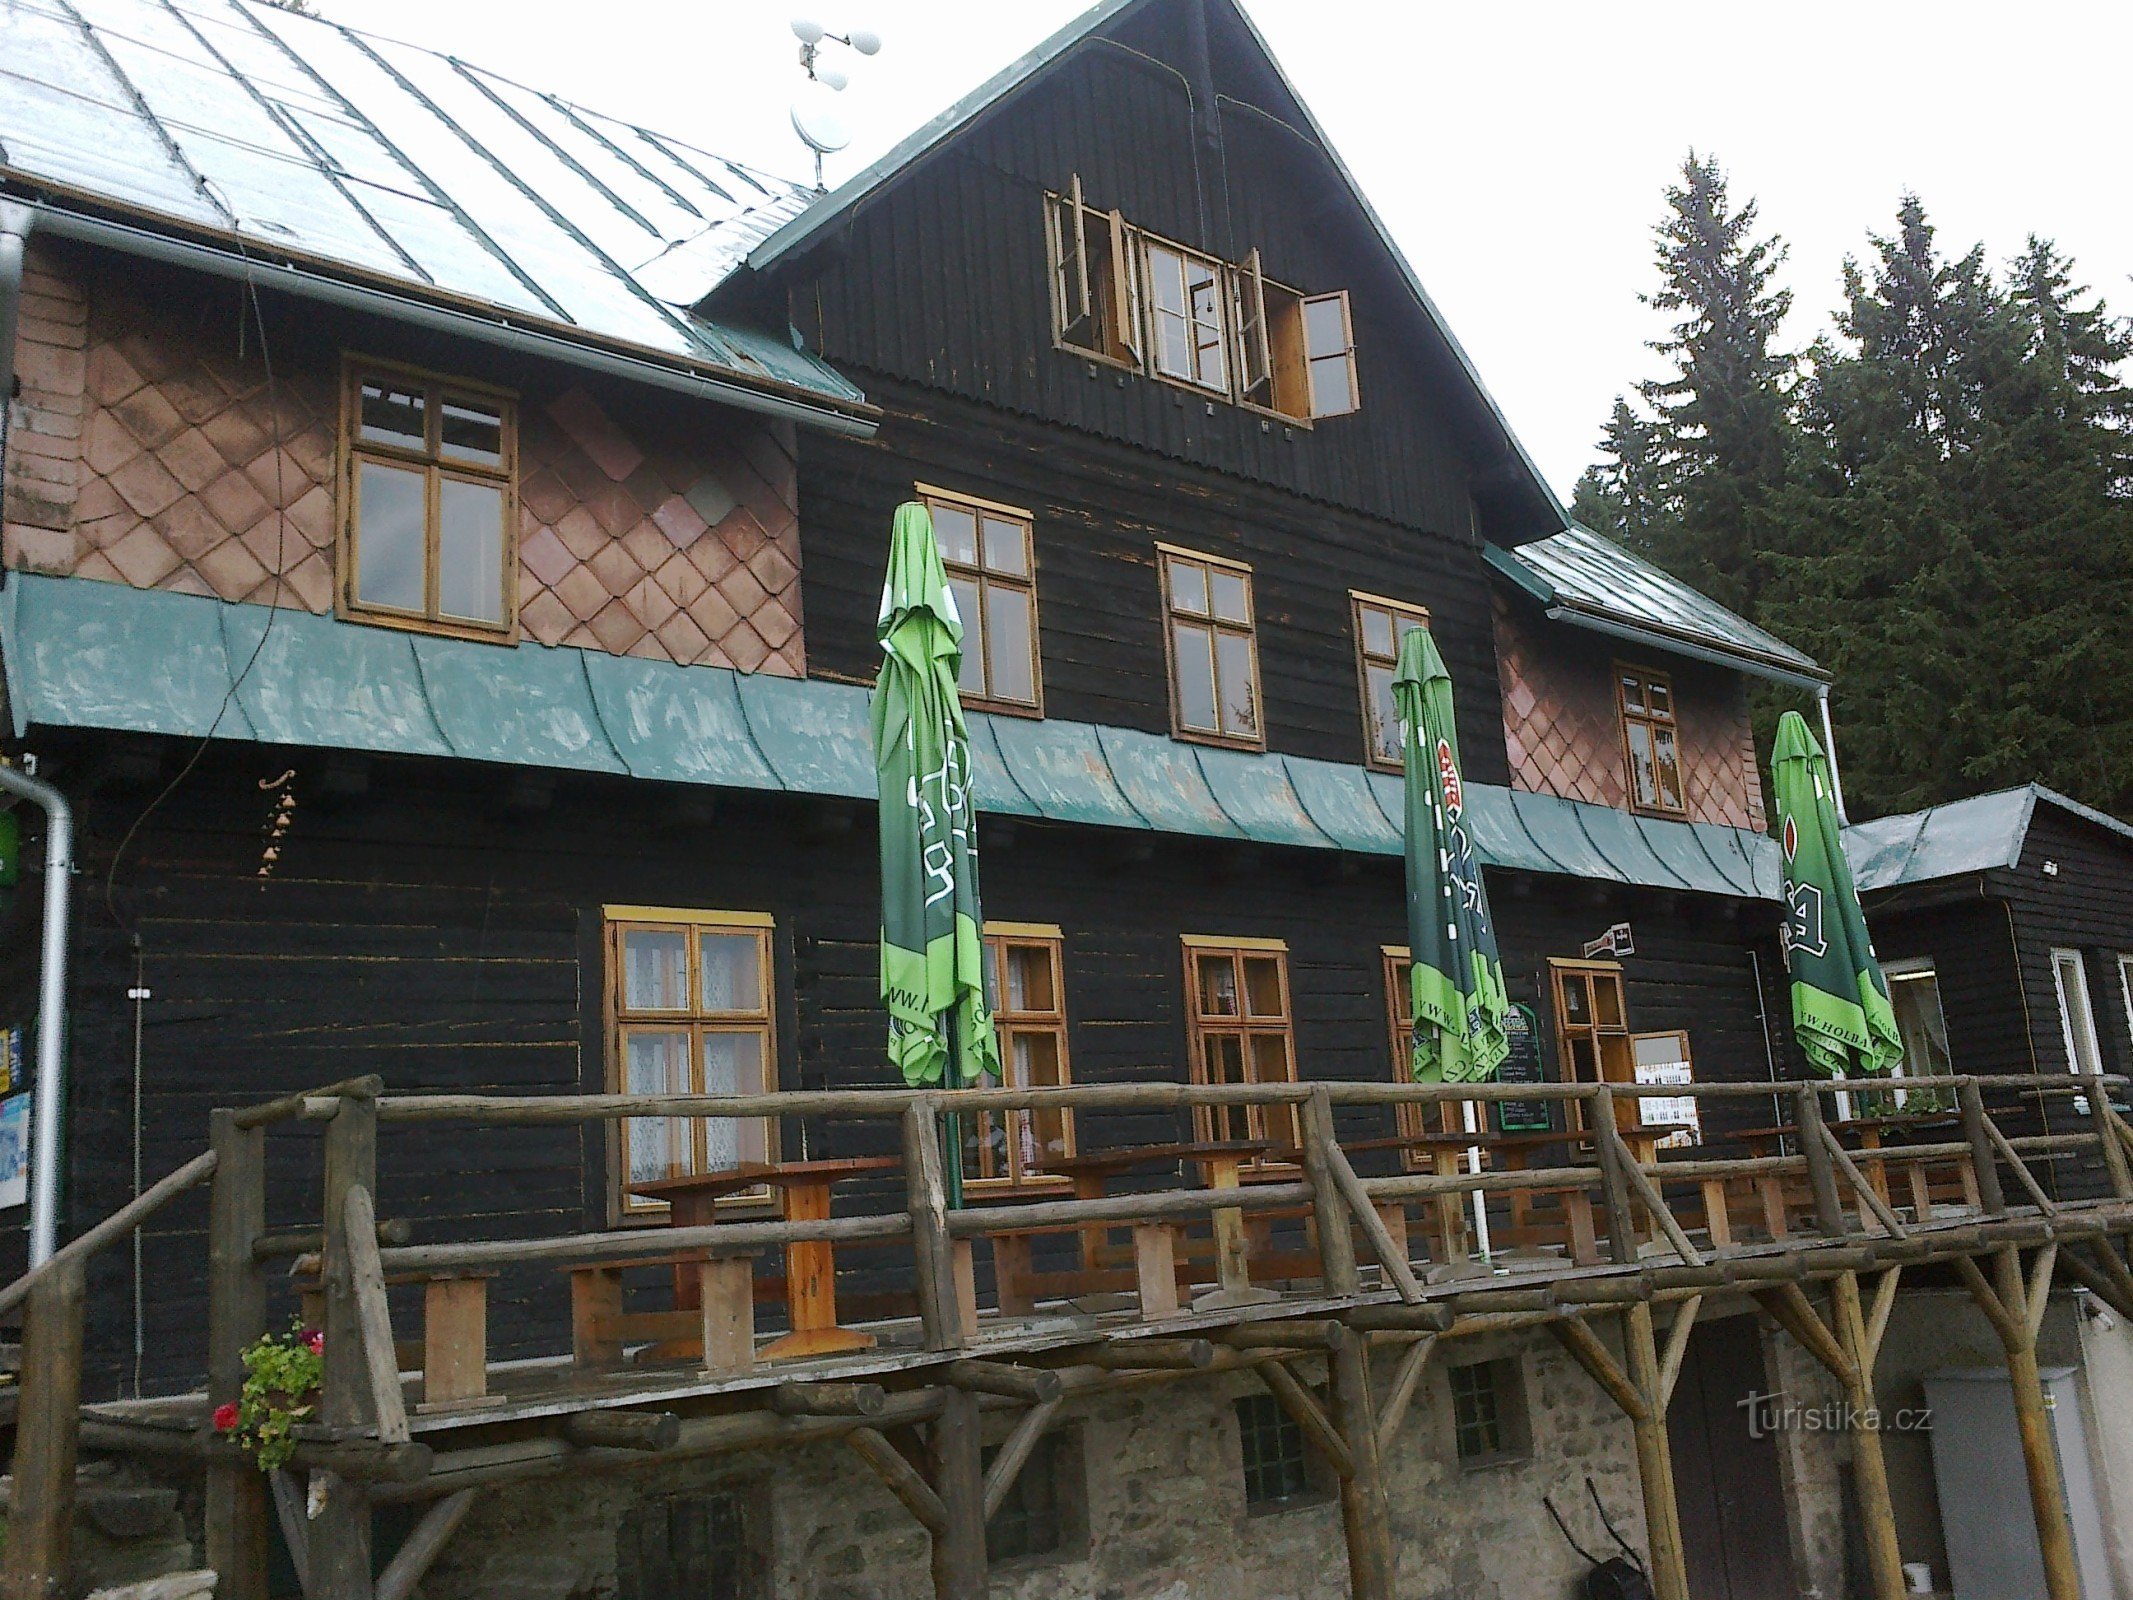 Từ ngôi nhà nhỏ kiểu Návrší đến Kralický Sněžník và quay lại qua Sušina